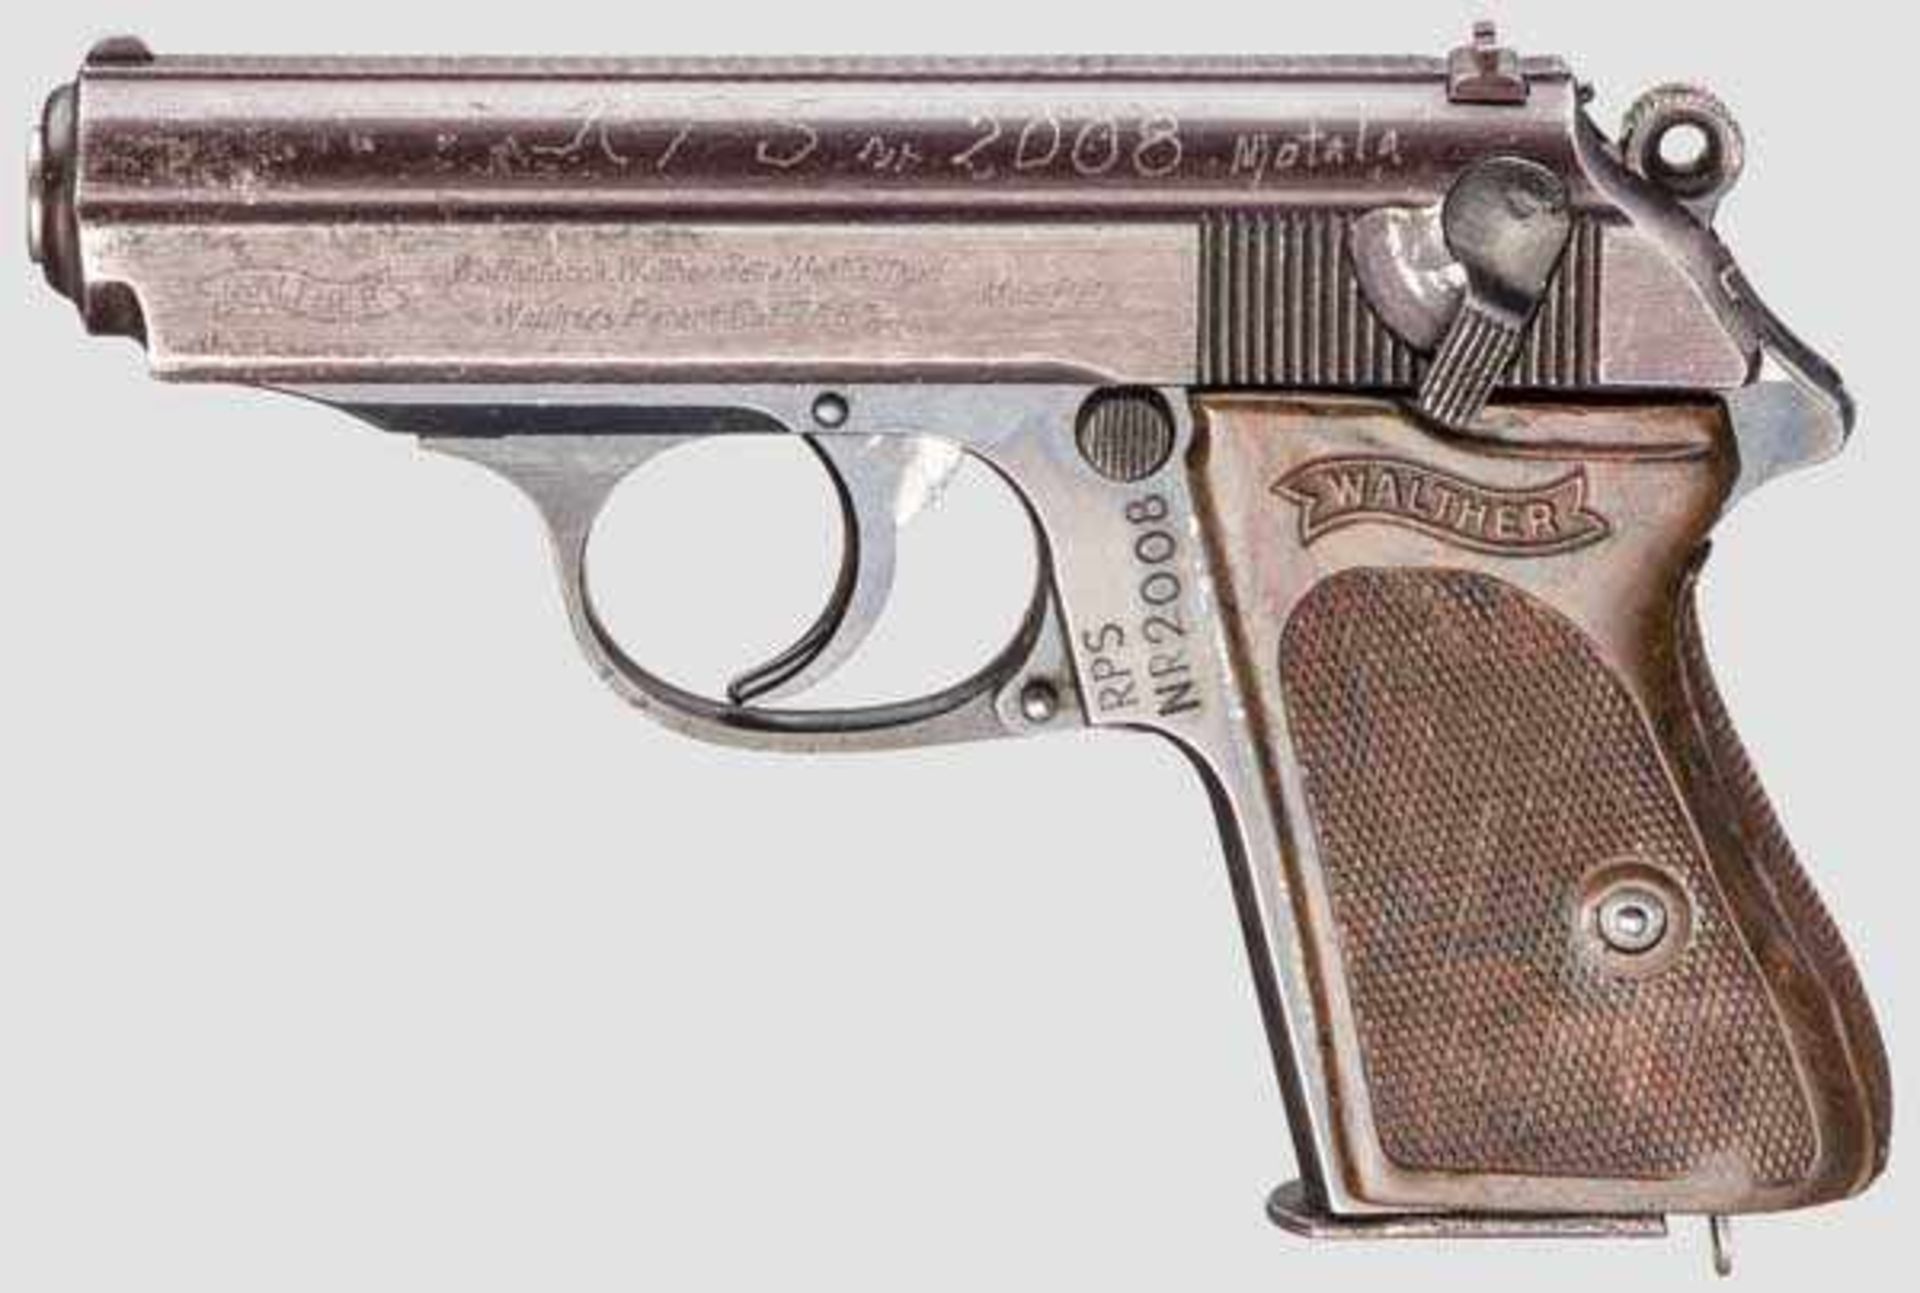 Walther PPK, ZM Kal. 7,65 mm, Nr. 786126 am Griffstück, Nr. 422263K am Verschluss. Blanker Lauf.